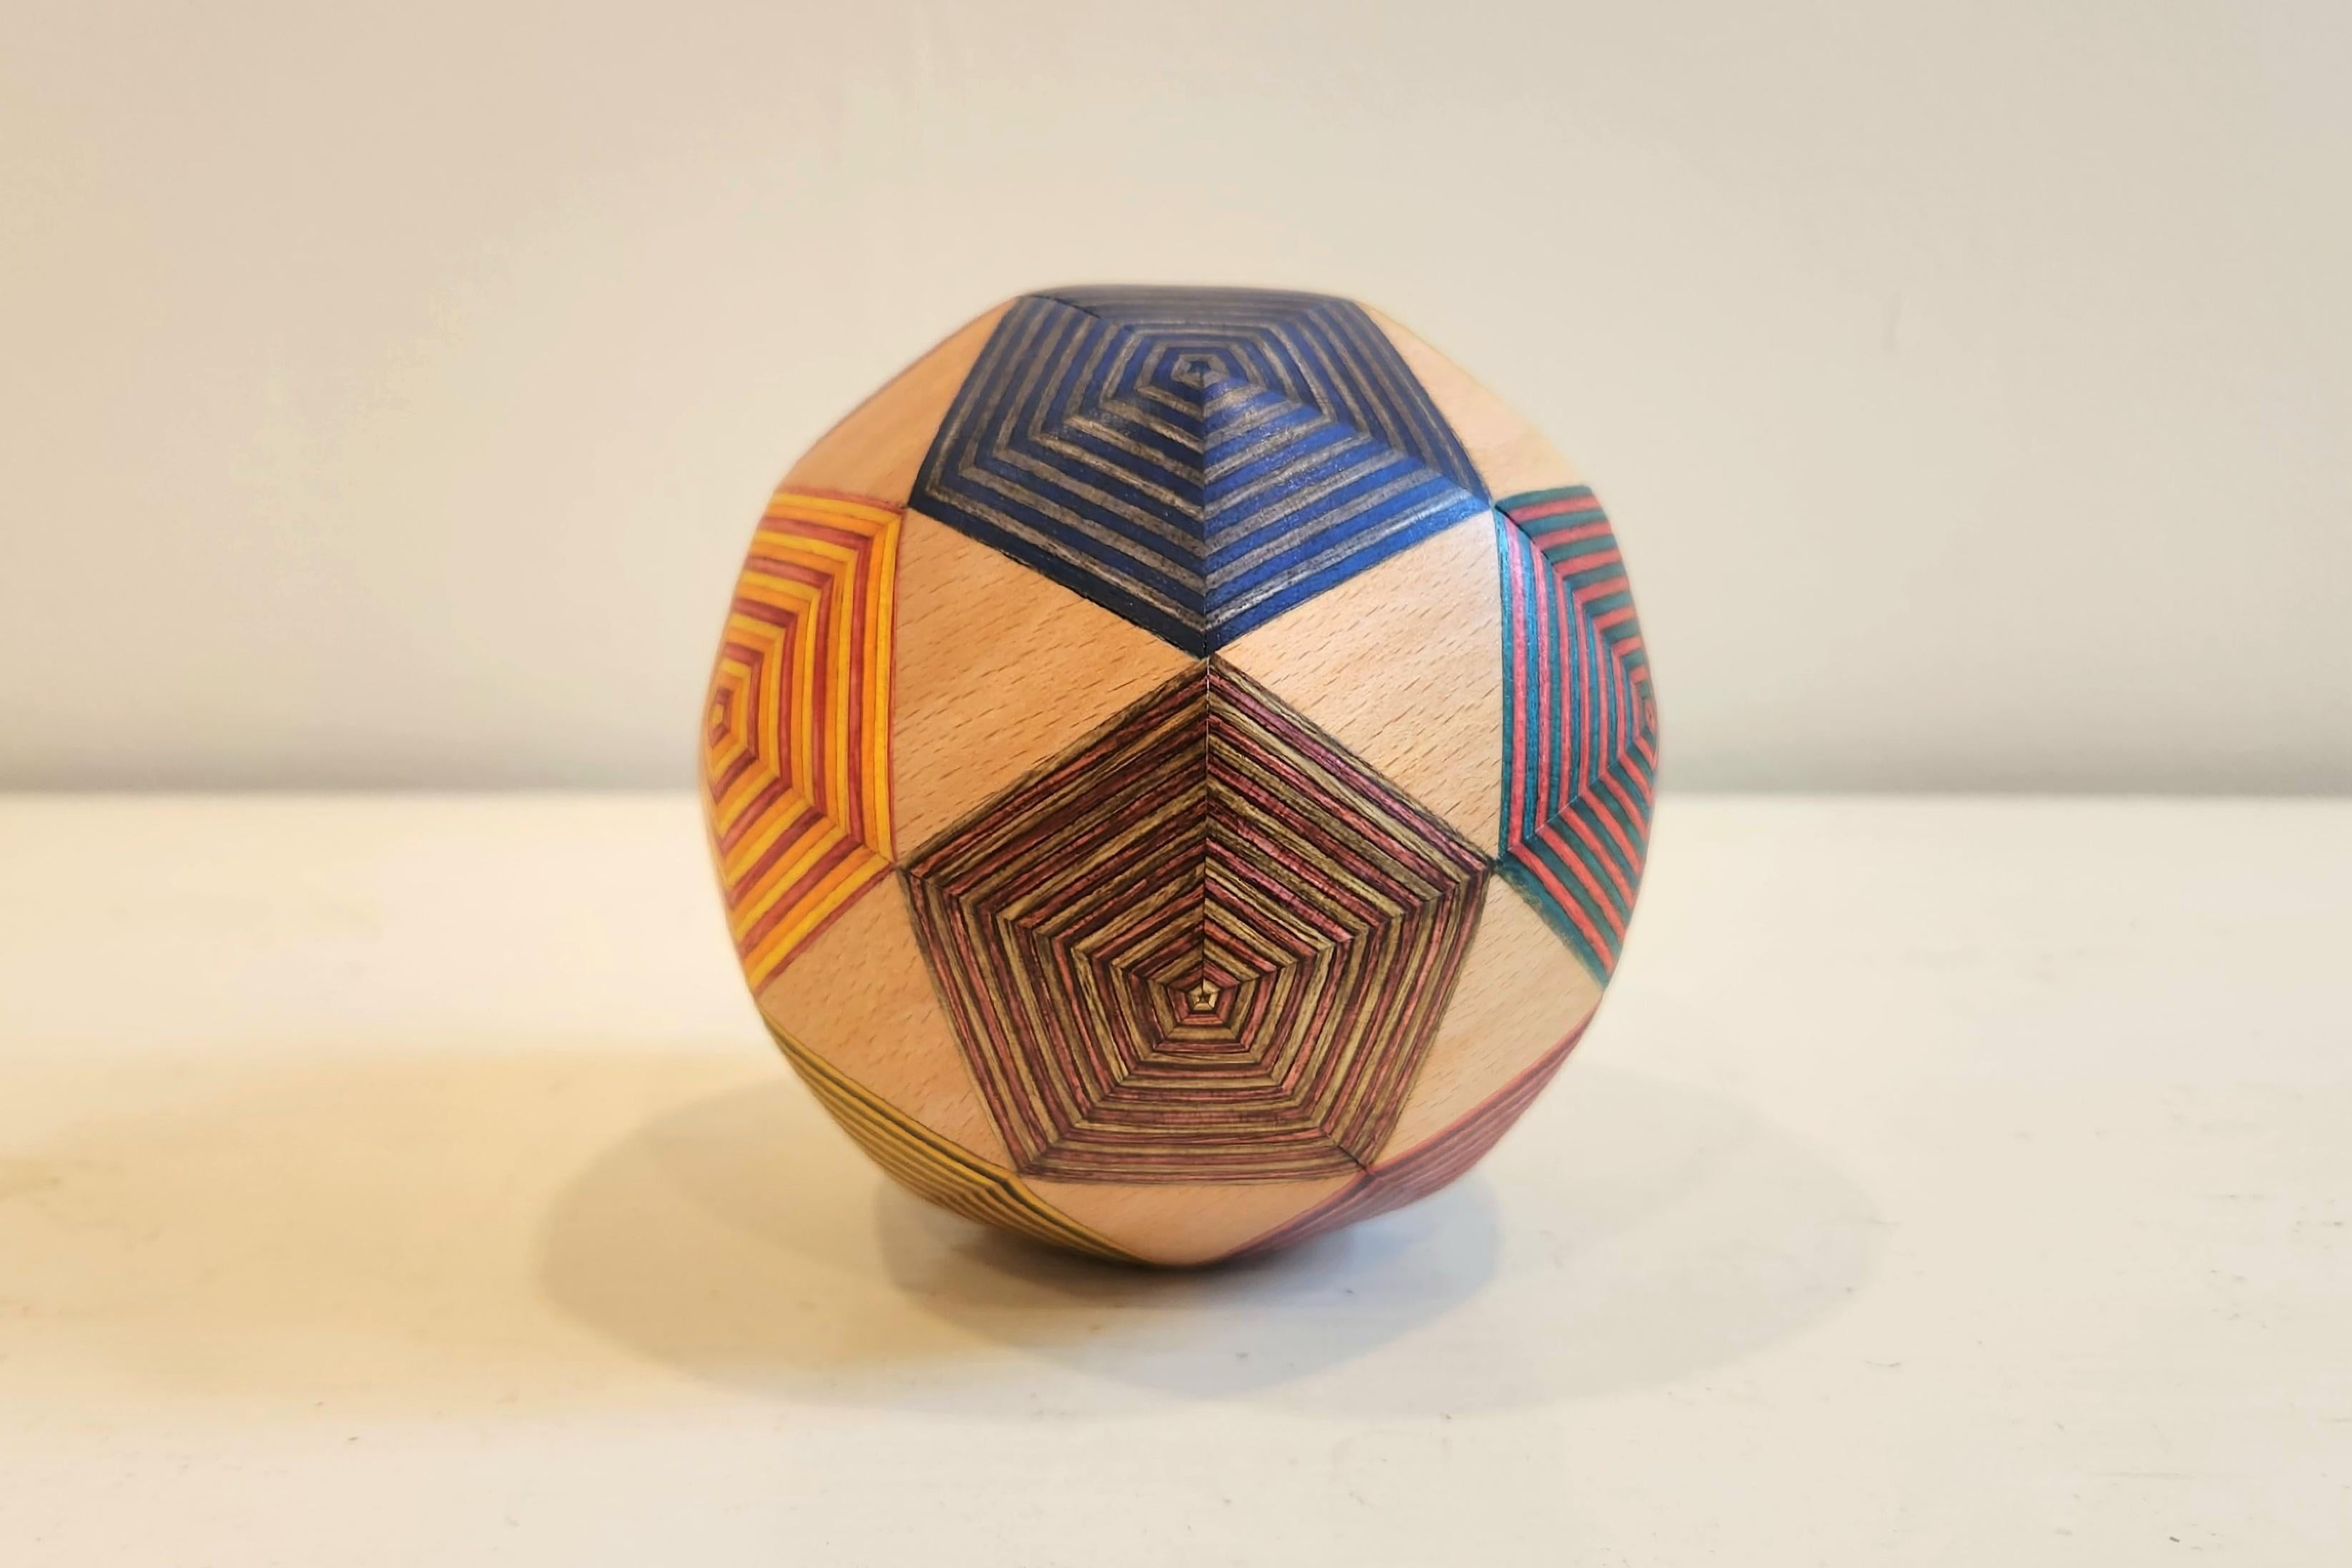 Diese einzigartige Skulptur besteht aus einer Kombination aus Ahornholz und pigmentiertem Birkensperrholz. Dieses Werk besteht aus 80 Einzelflächen und heißt Frequency 2 Icosahedron. Dieses Stück strahlt eine spielerische Energie aus, da die bunten